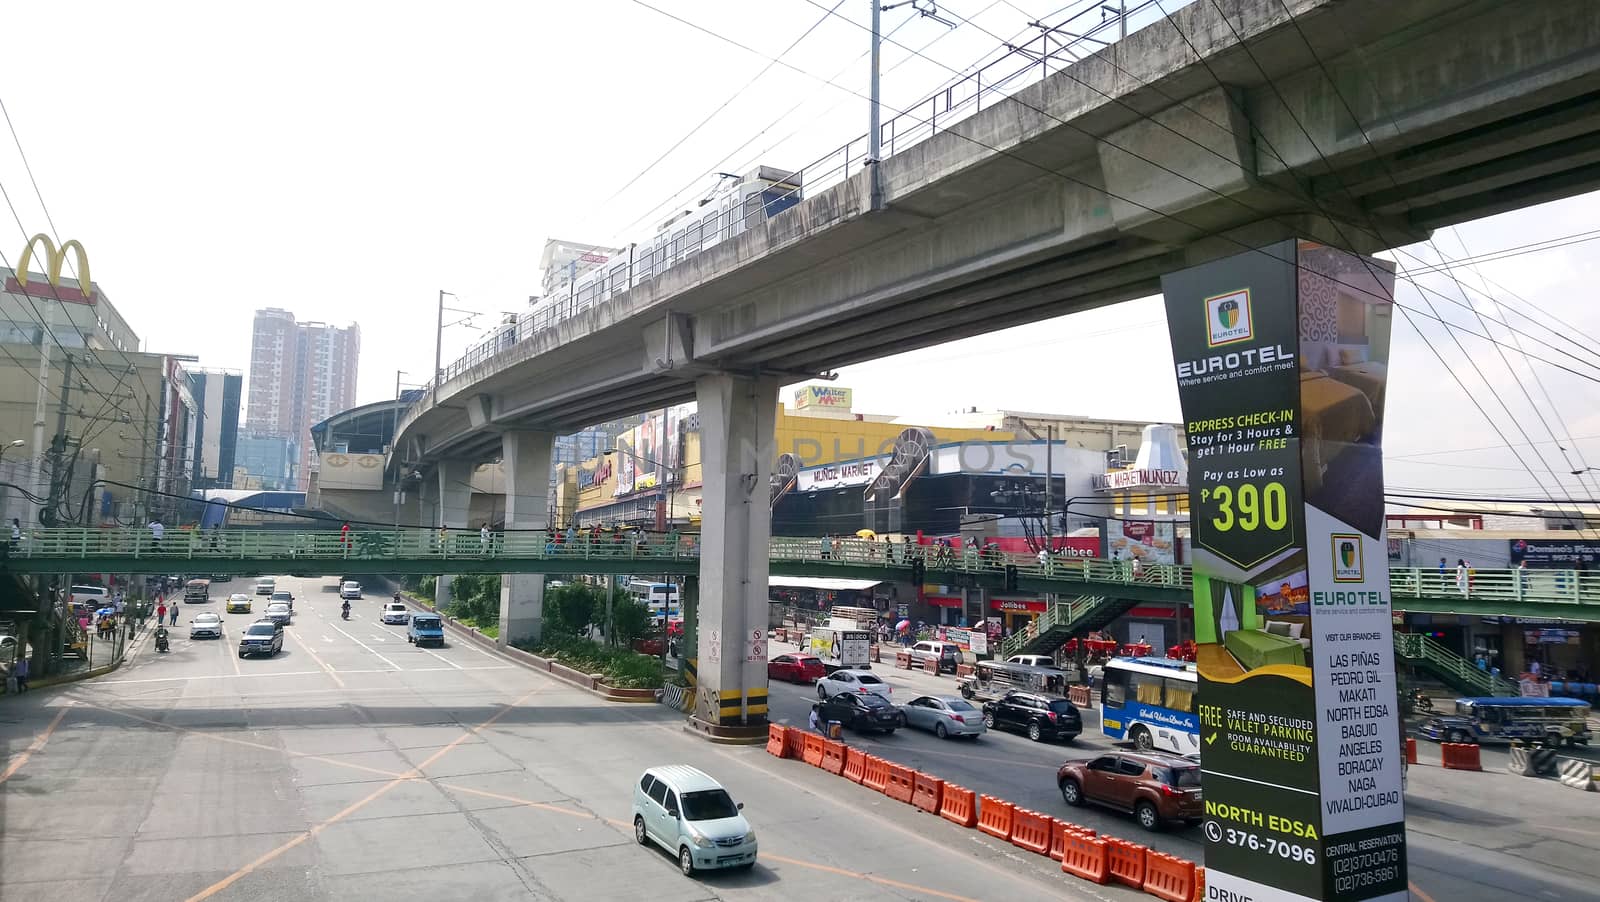 Epifanio de los Santos Avenue in Quezon City, Philippines by imwaltersy